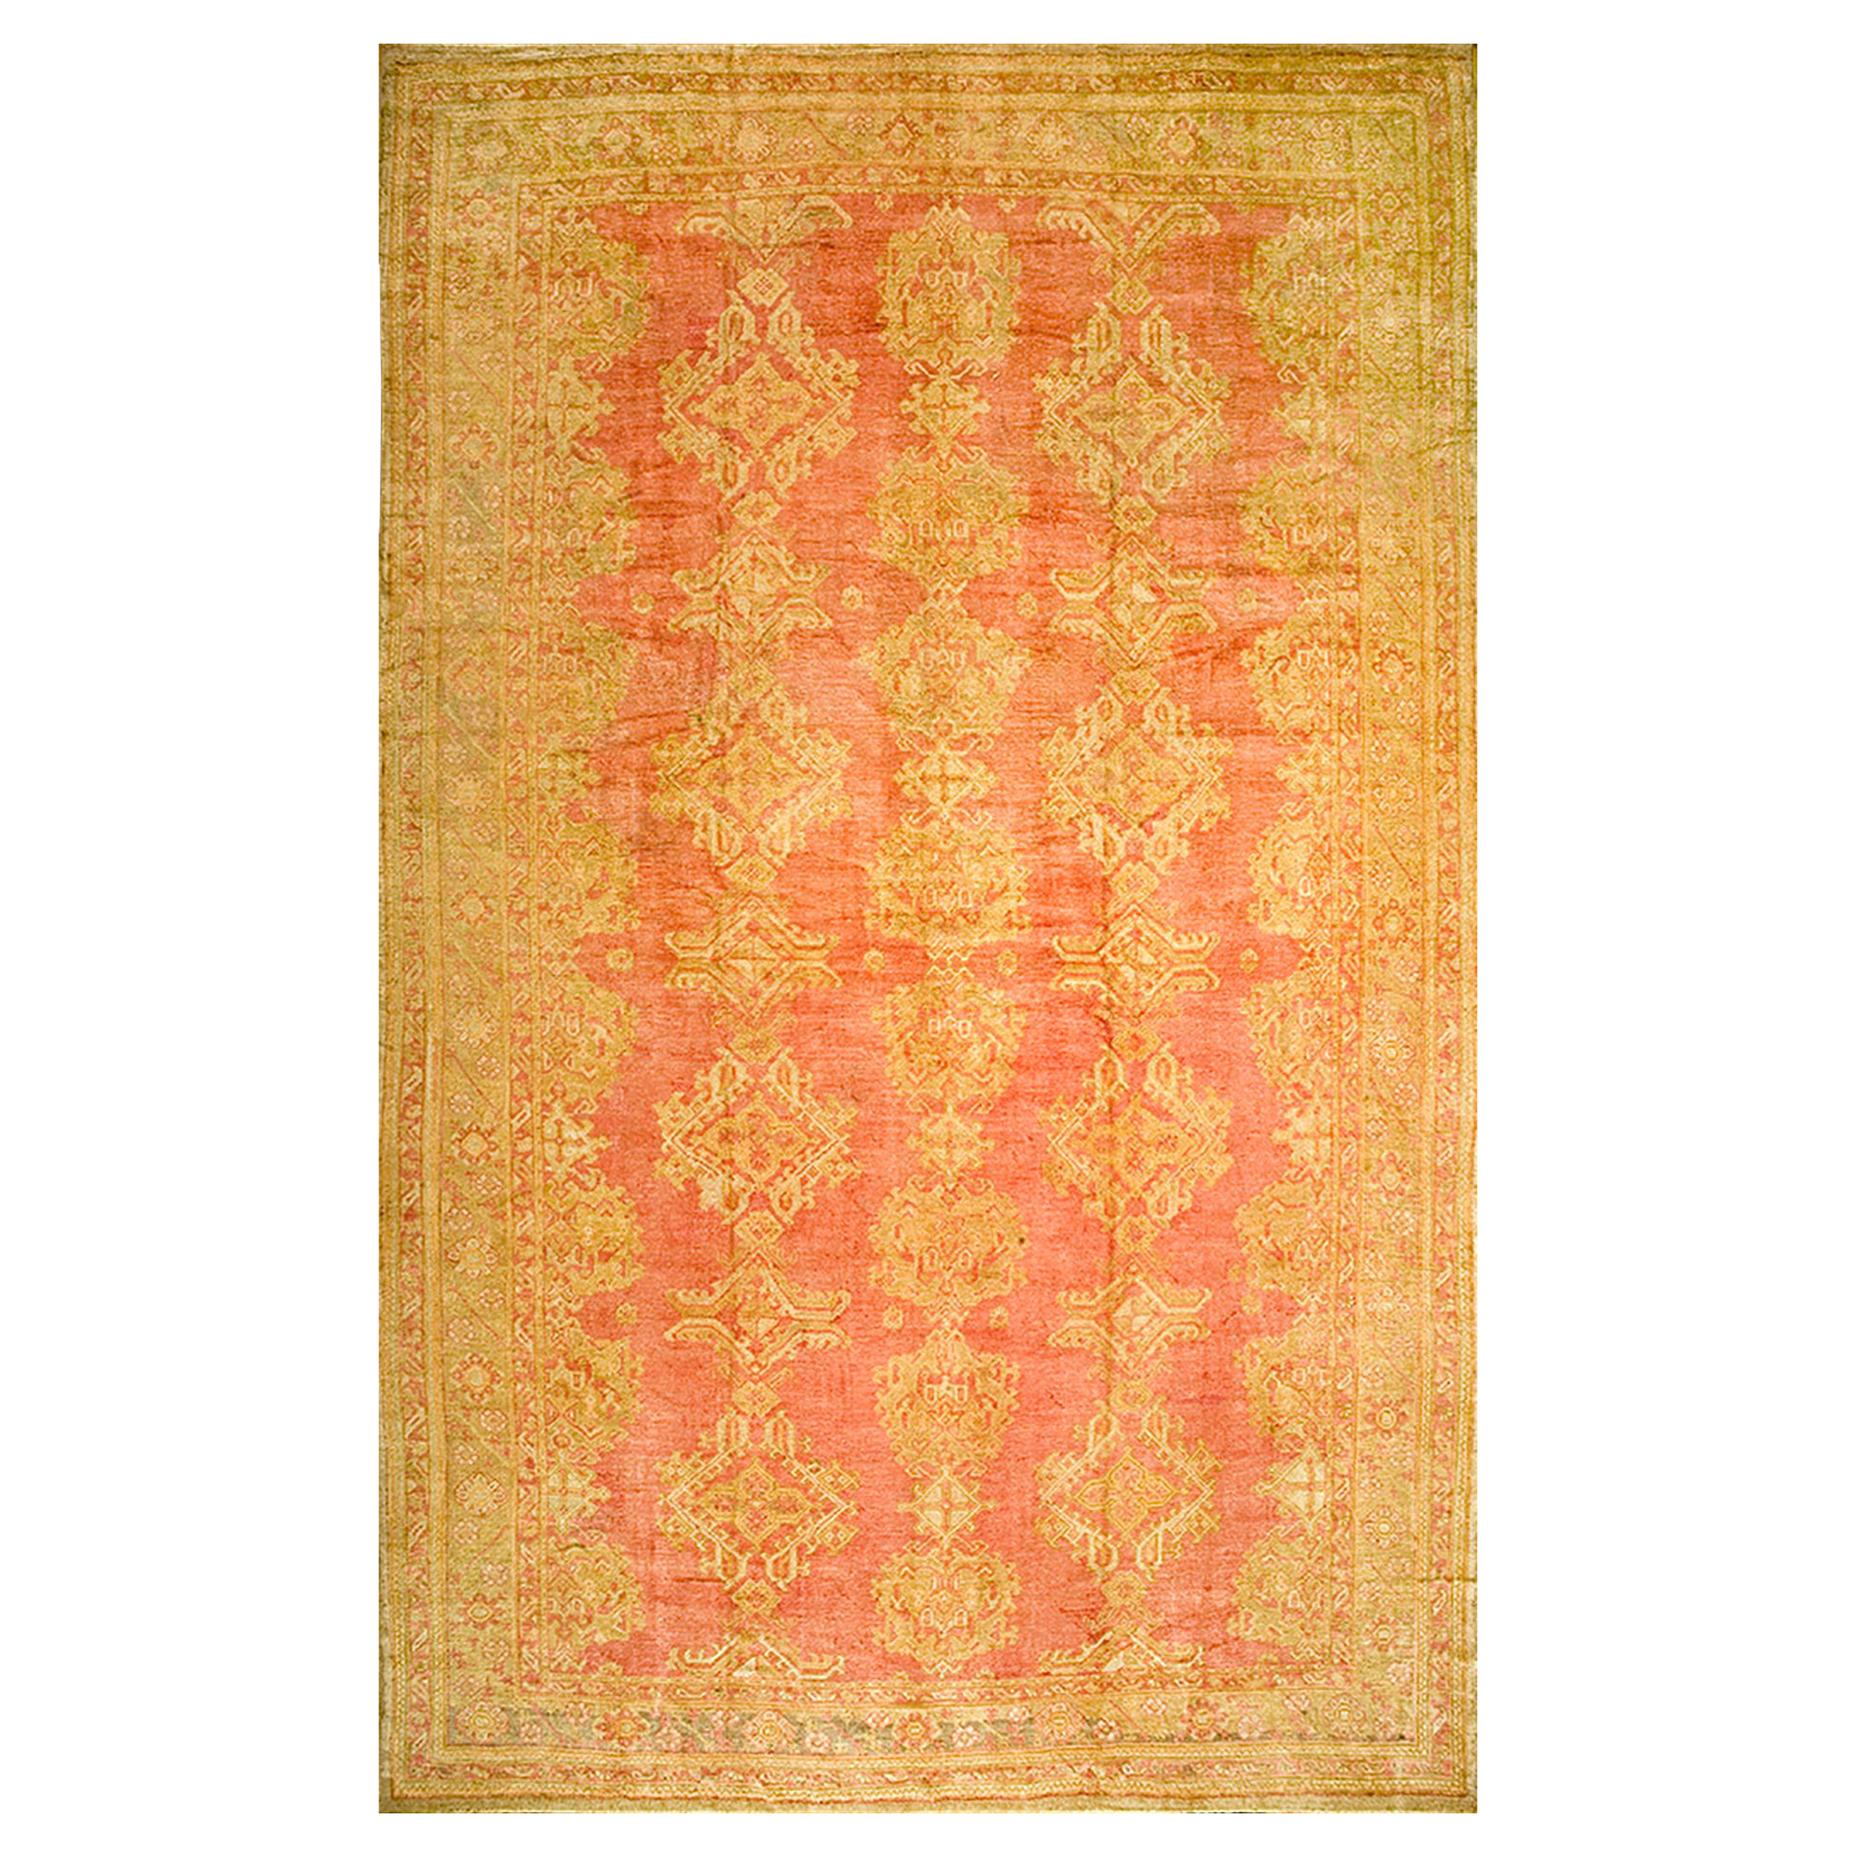 Türkischer Oushak-Teppich des frühen 20. Jahrhunderts ( 13'2" x 21'2" - 402 x 645)